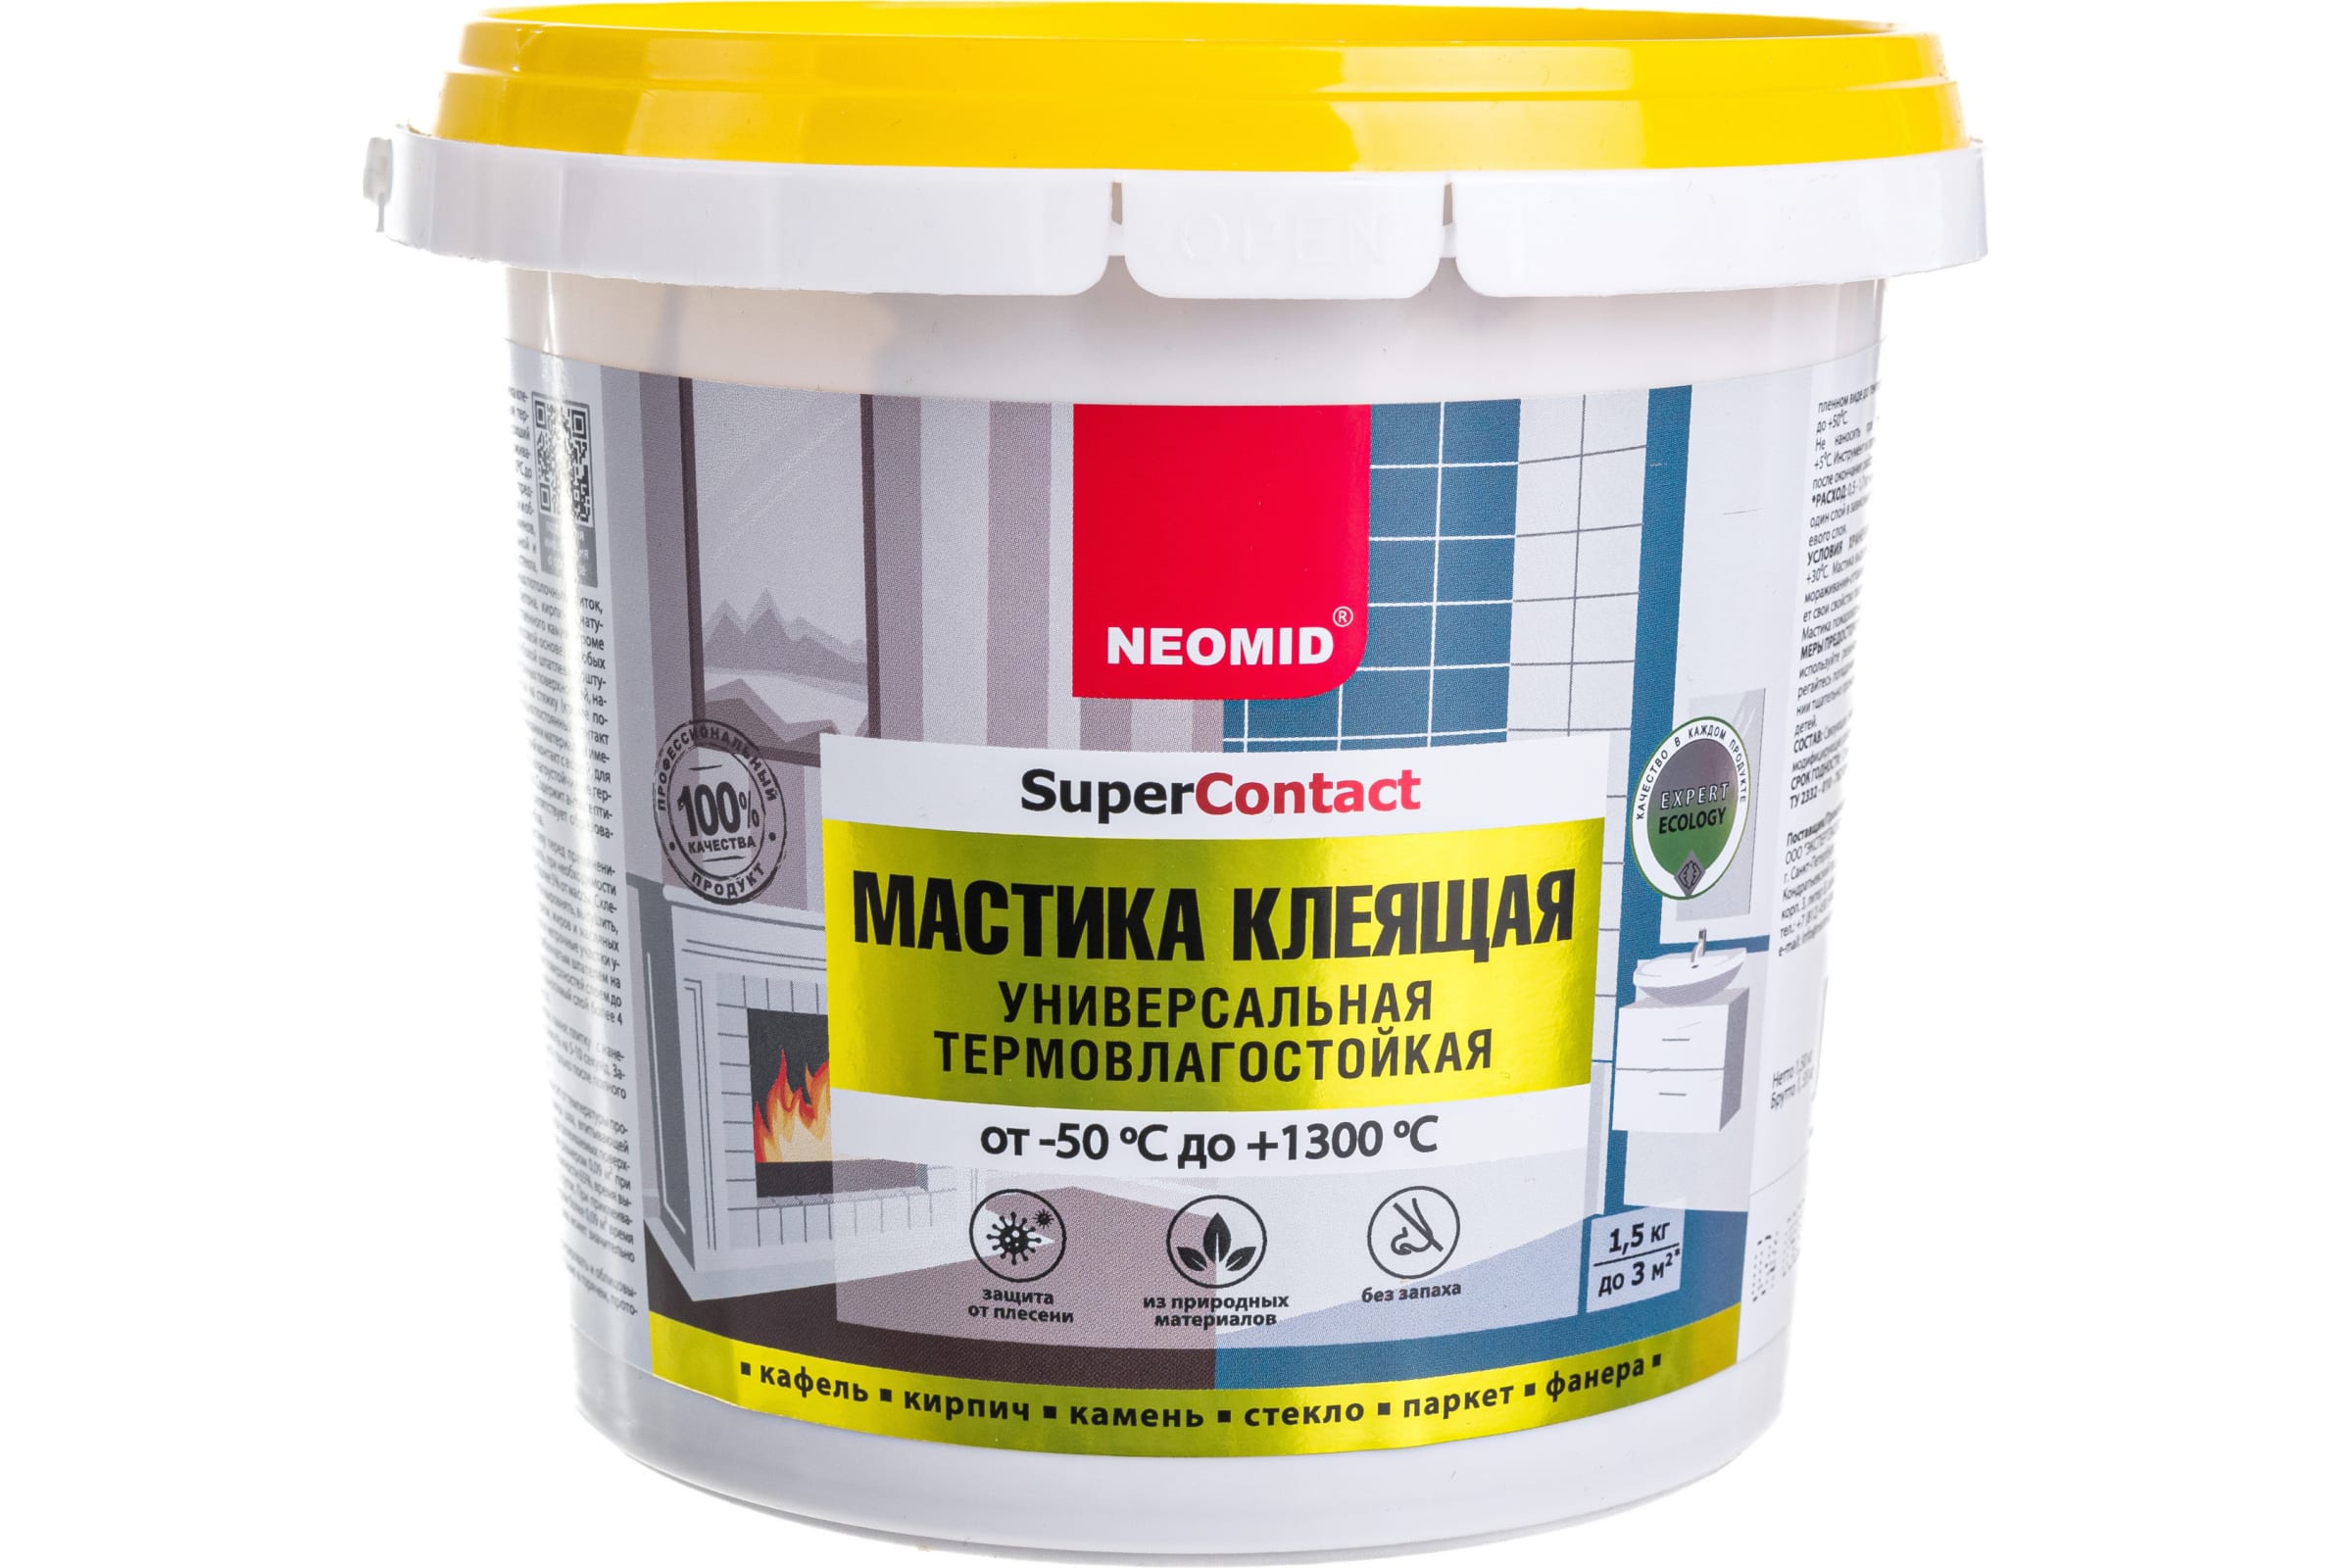 Neomid Мастика клеящая термостойкая универсальная /1.5 кг./ Н-Маст-1,5